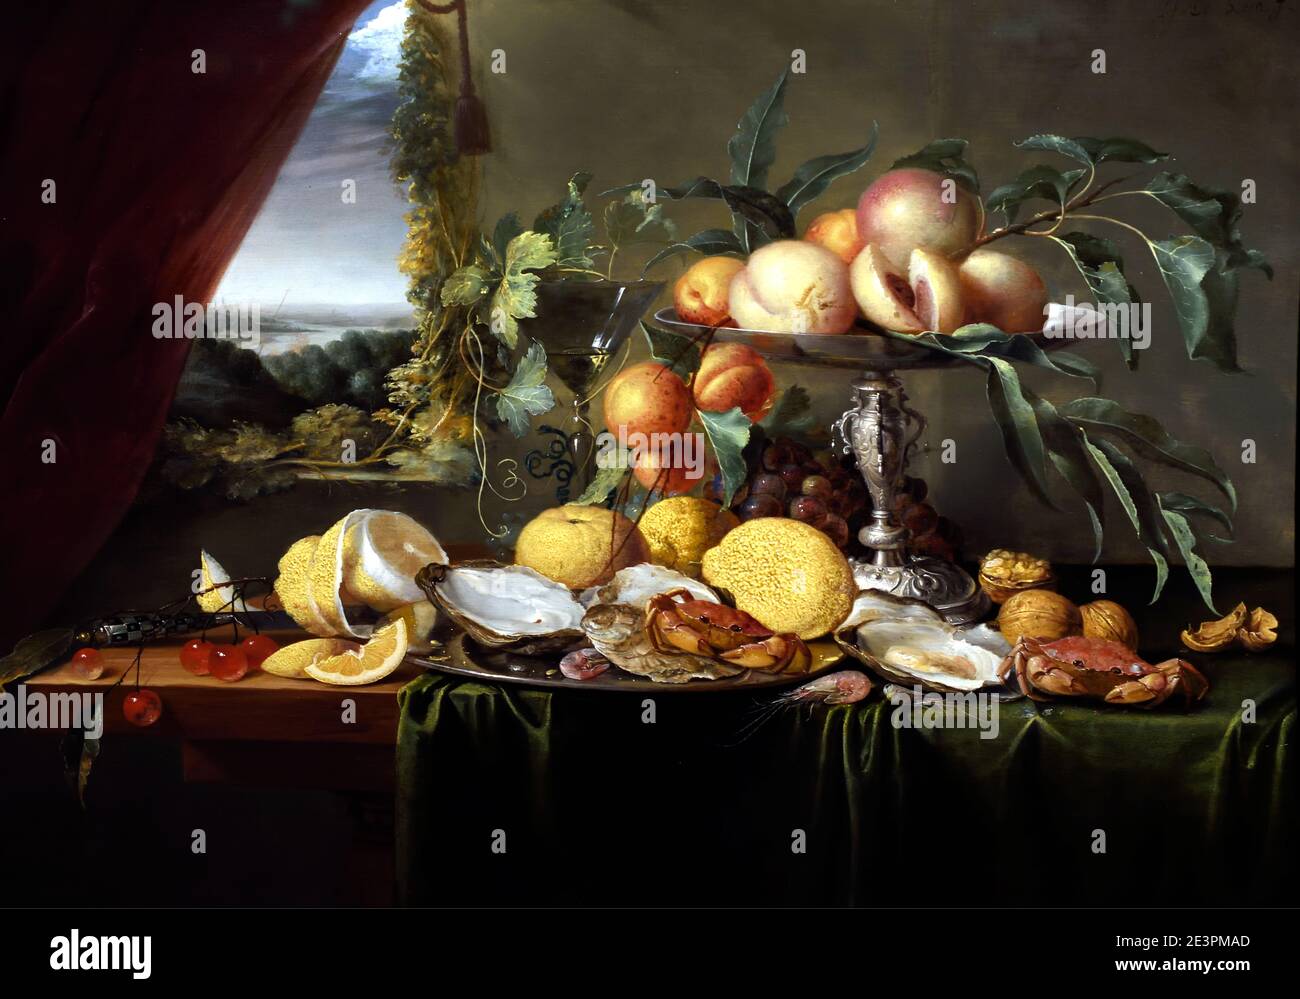 Jan Davidsz. de Heem trecht 1606 – Antwerp 1684,  Banquet Still Life with a View onto a Landscape,  The Netherlands, Dutch, Stock Photo